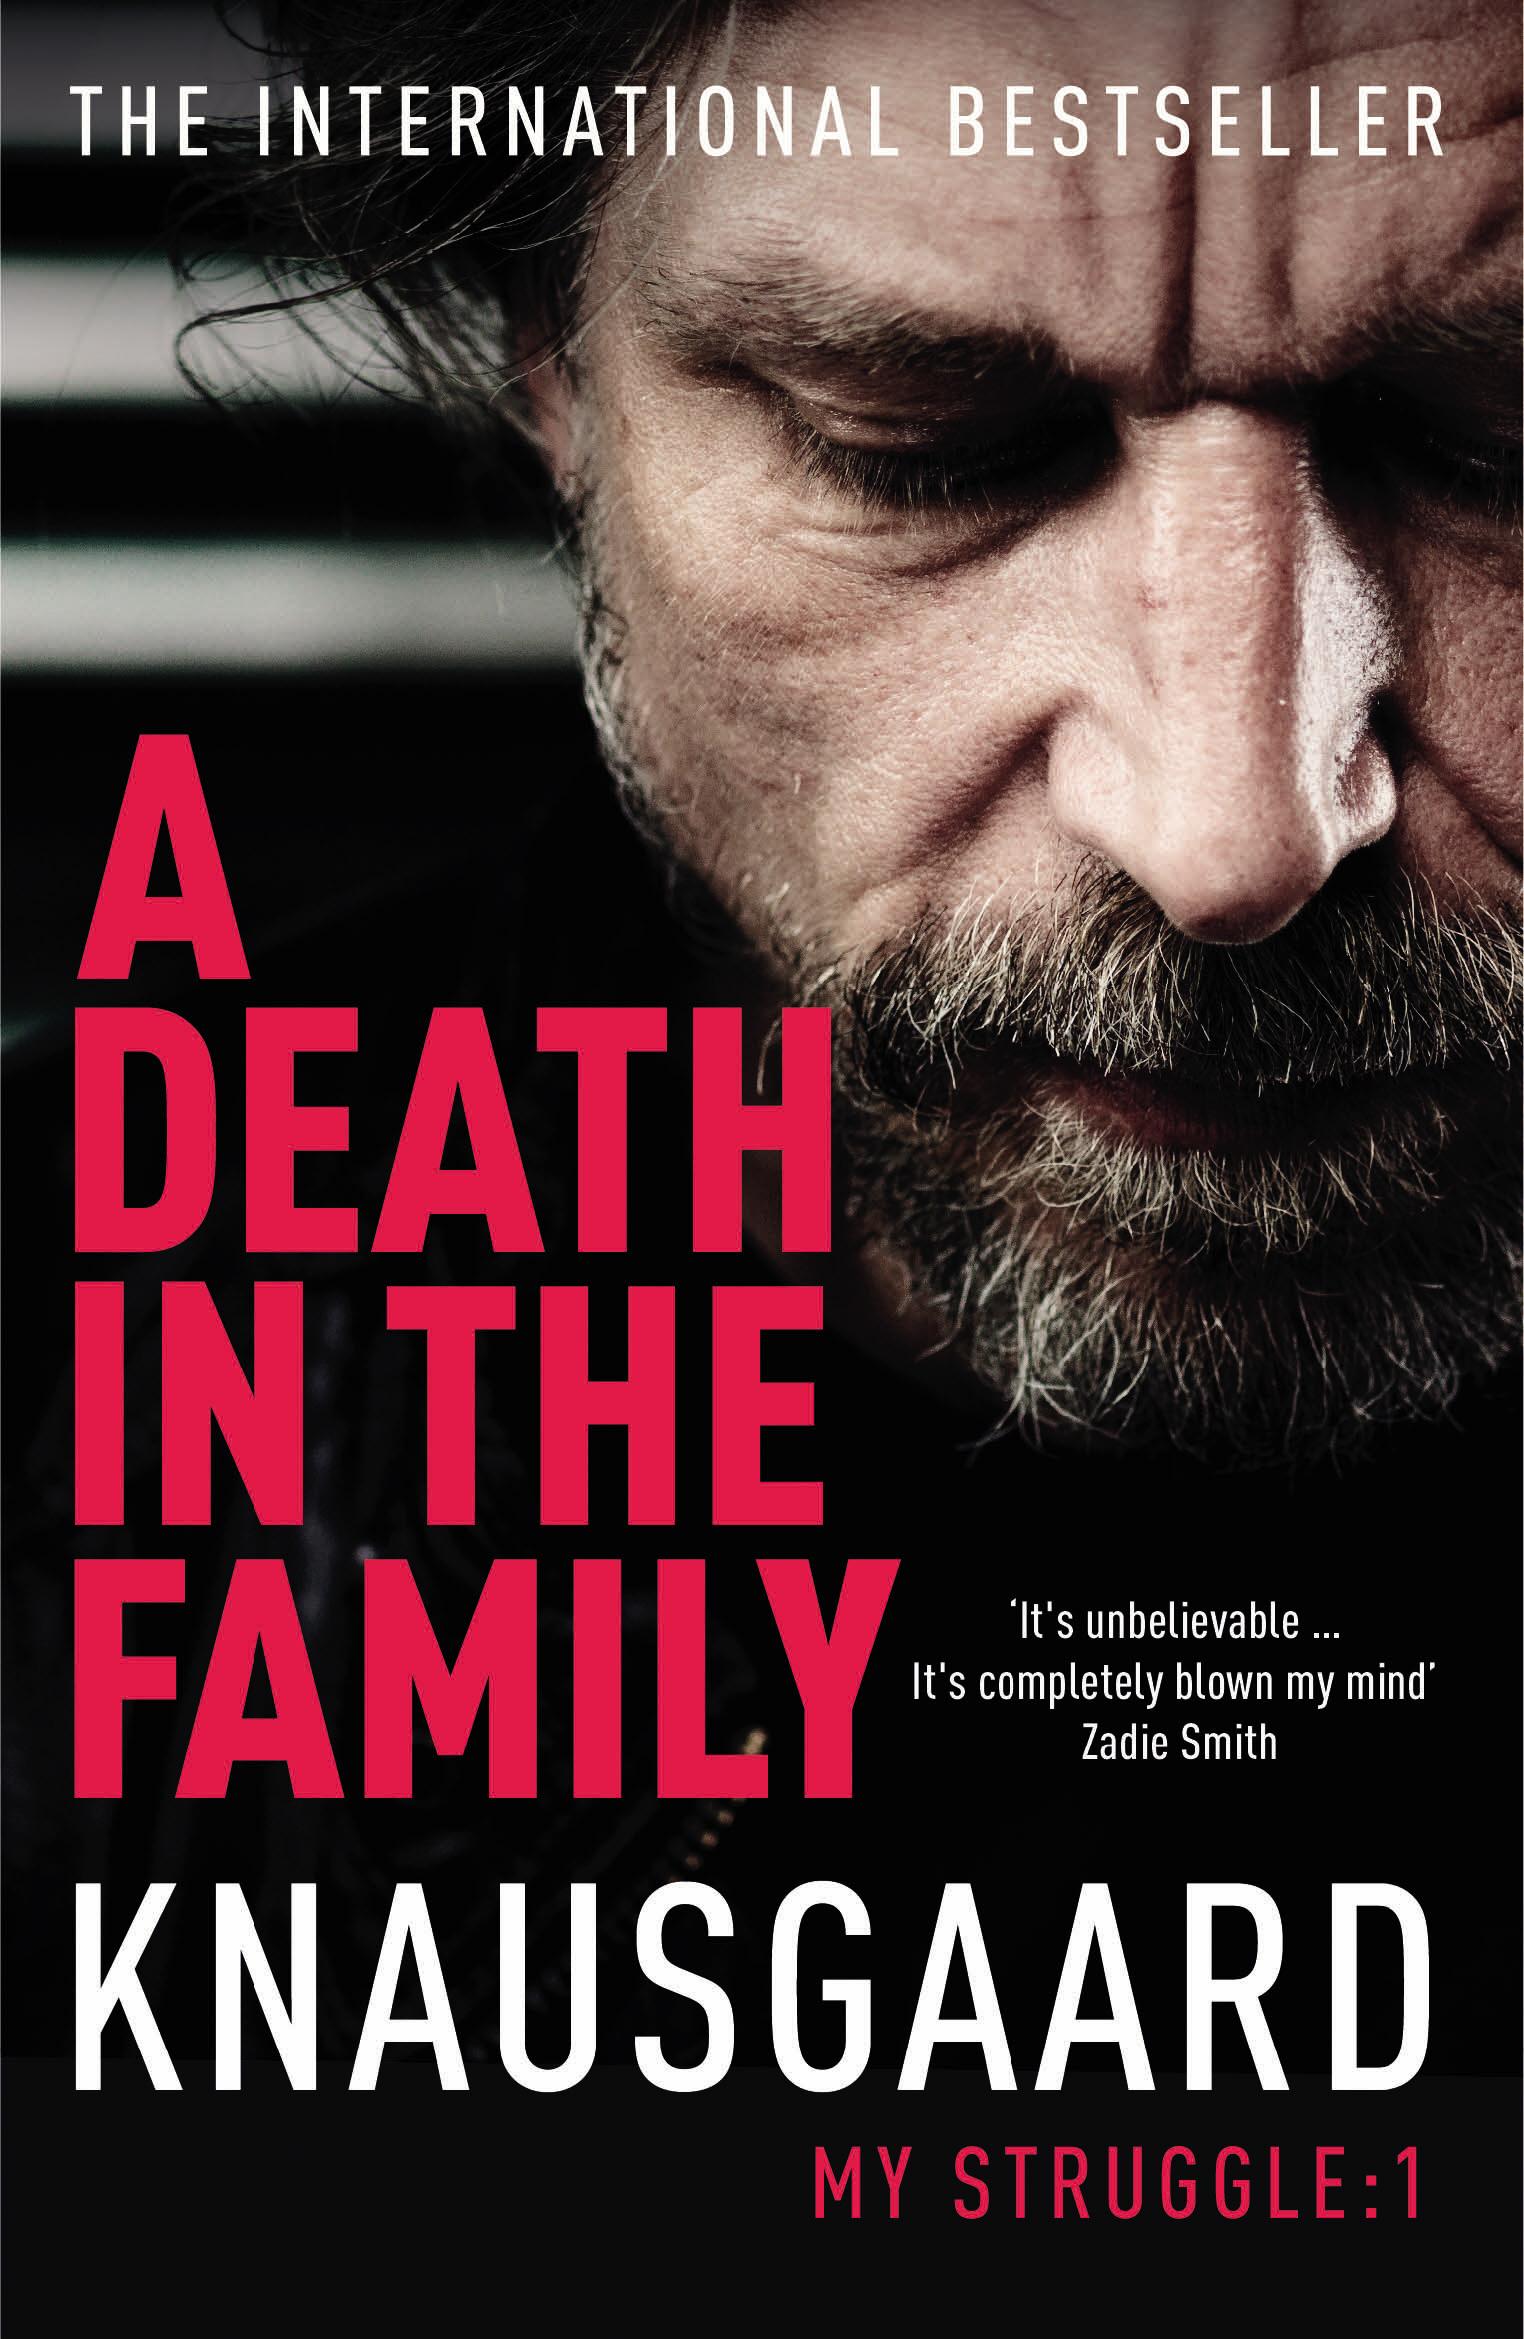 A Death in the Family - Knausgaard, Karl Ove Knausgard, Karl Ove